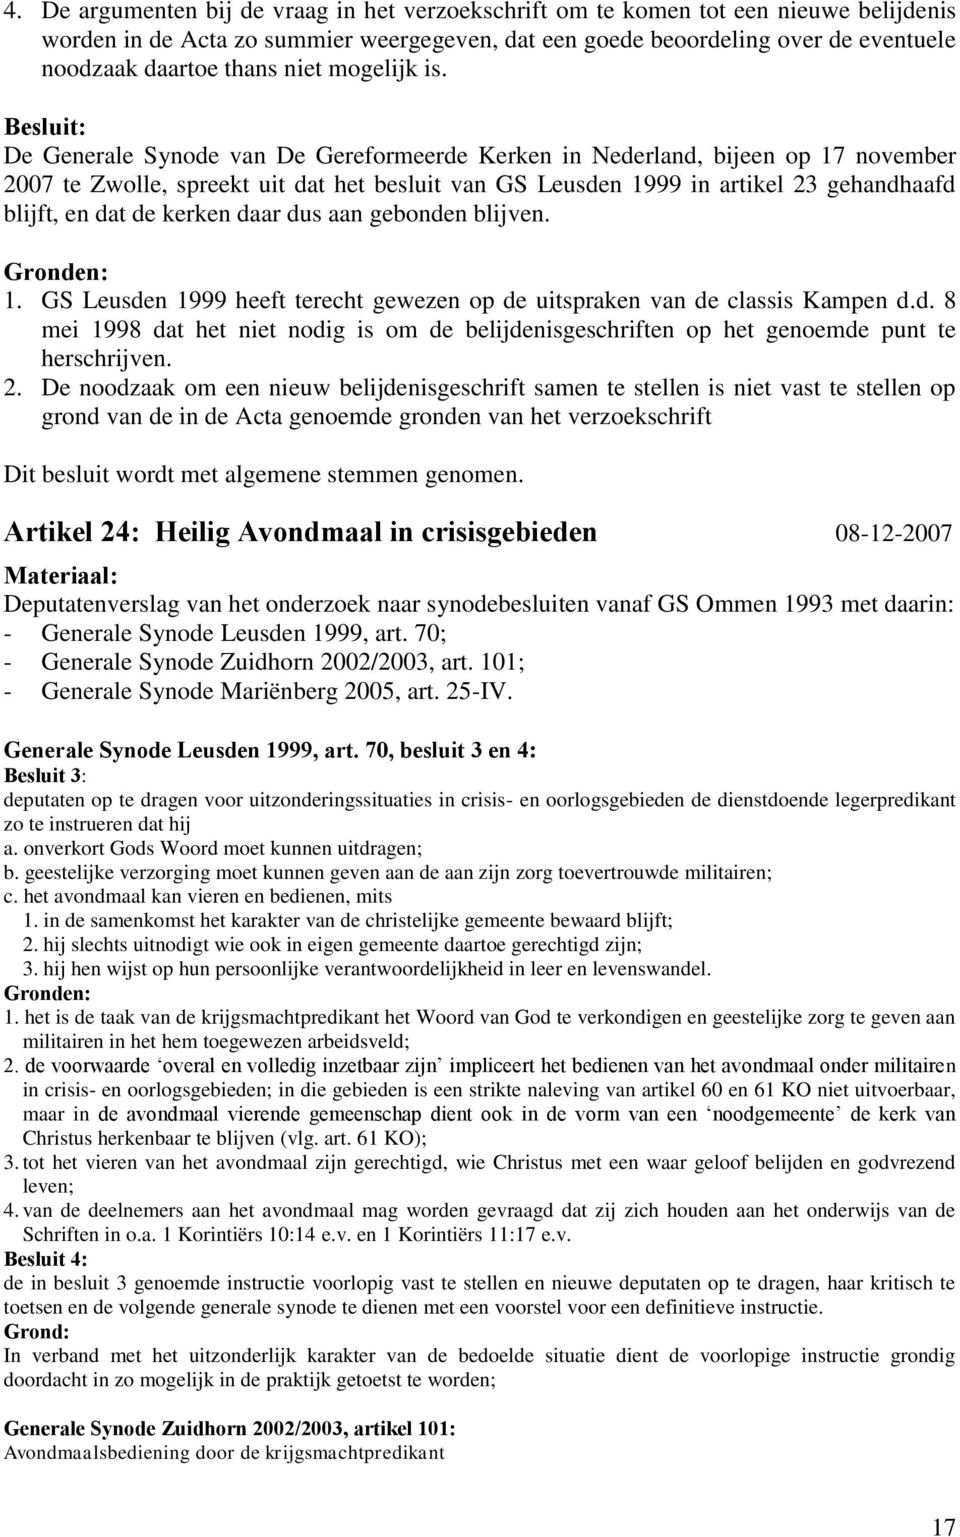 Besluit: De Generale Synode van De Gereformeerde Kerken in Nederland, bijeen op 17 november 2007 te Zwolle, spreekt uit dat het besluit van GS Leusden 1999 in artikel 23 gehandhaafd blijft, en dat de